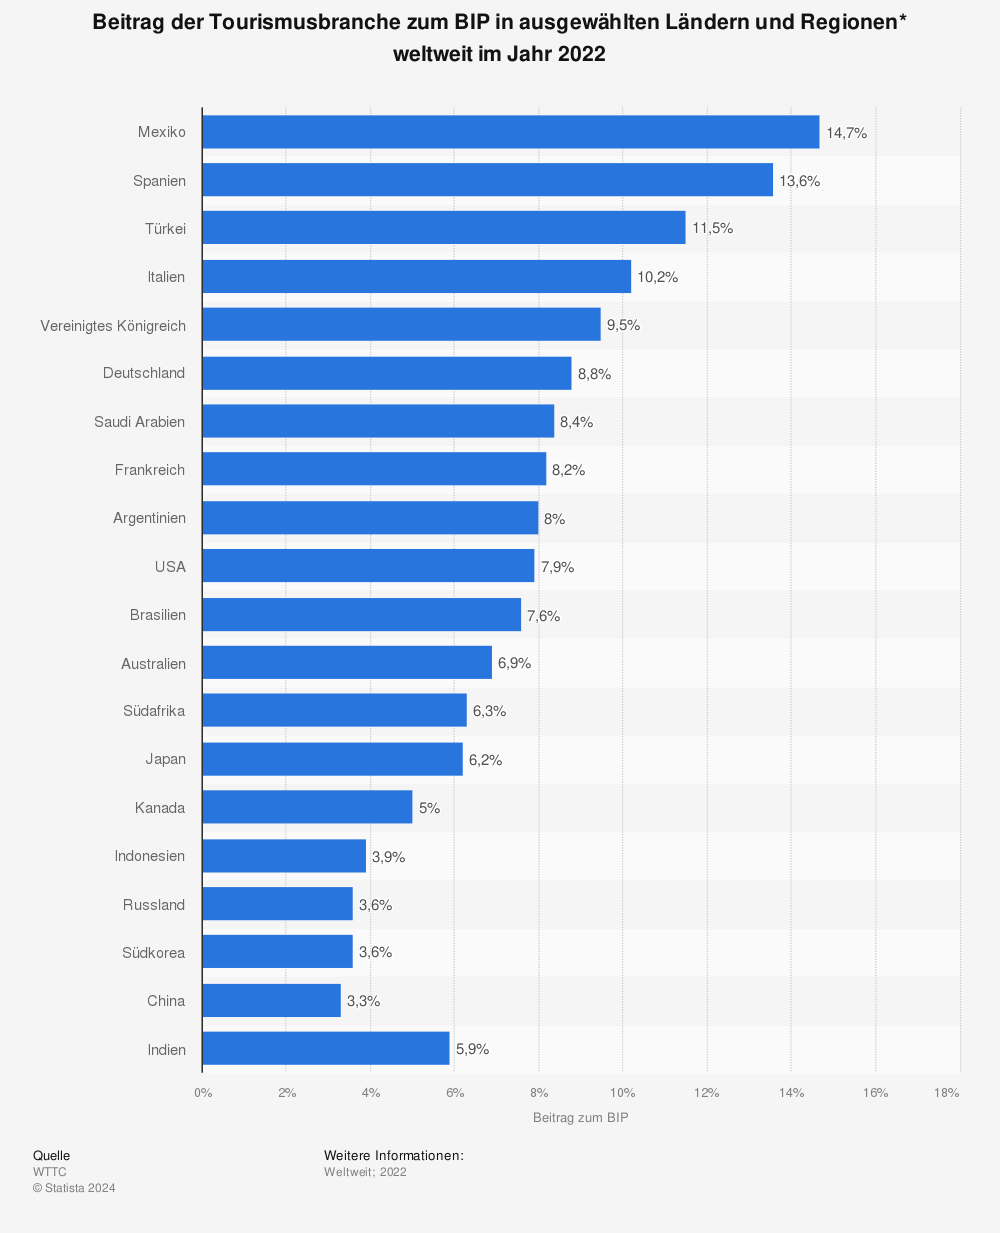 Statistik: Beitrag der Tourismusbranche zum BIP in ausgewählten Ländern und Regionen weltweit* in den Jahren 2020 und 2021 | Statista